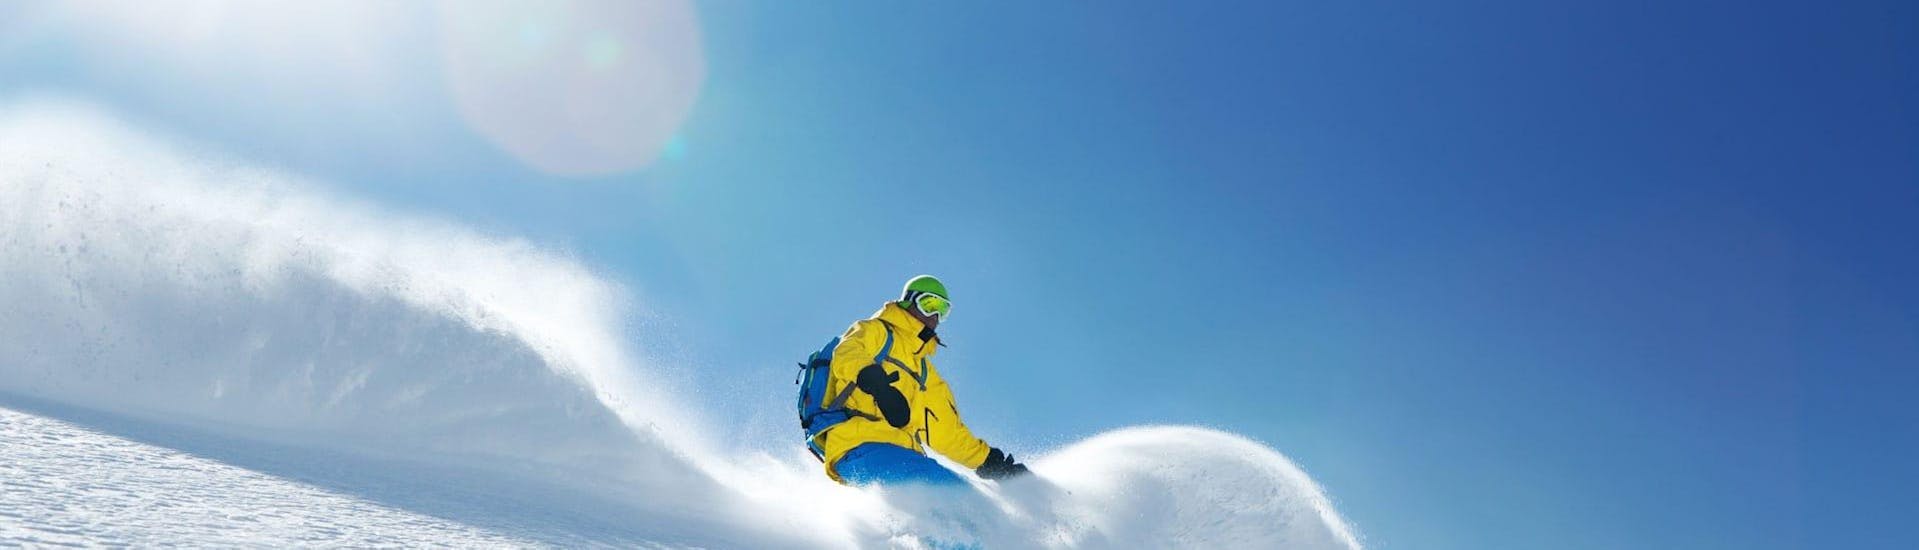 Lezioni private di Snowboard per tutti i livelli con Skischule Toni Gruber.